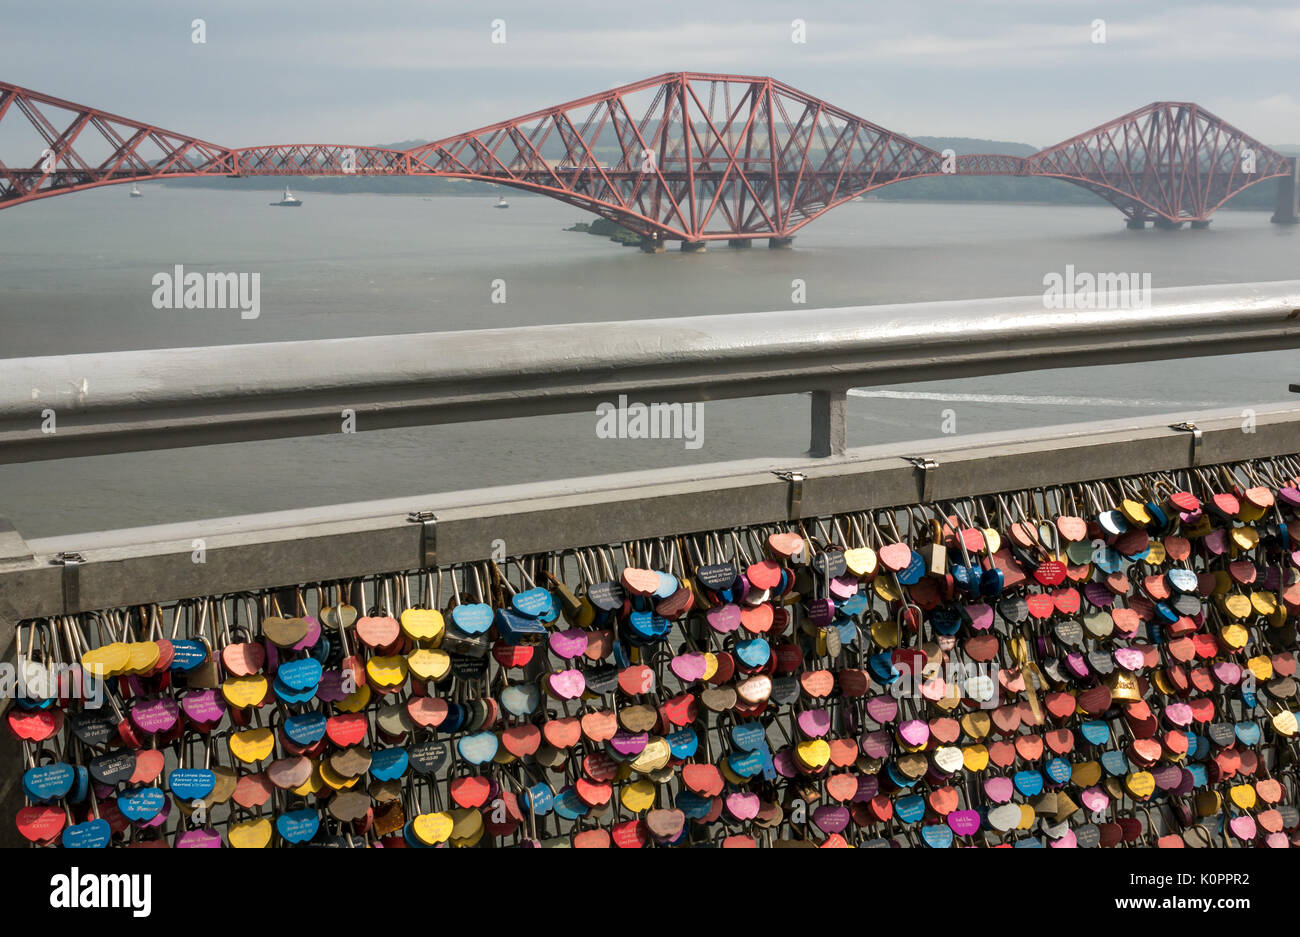 Abschnitt der Brücke Geländer mit Masse an bunten Liebe Sperren auf Gehweg Geländer der Forth Road Bridge mit Forth Rail Bridge in Distanz, Schottland, Großbritannien Stockfoto